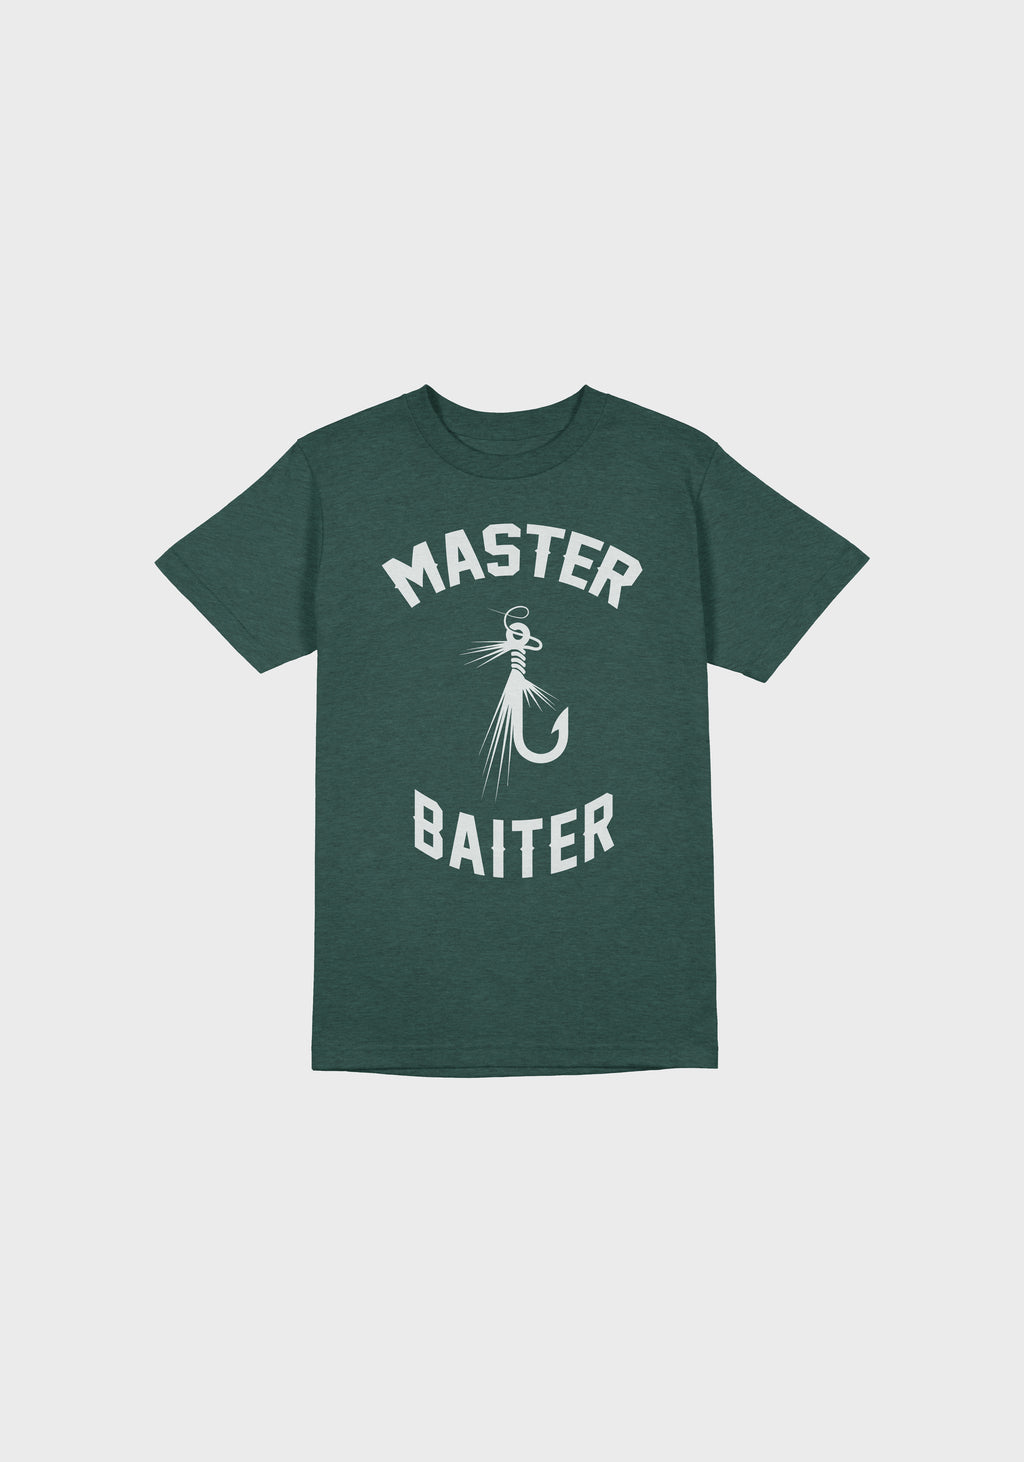 Master Baiter SS Tee (Black) – Maple Street Co